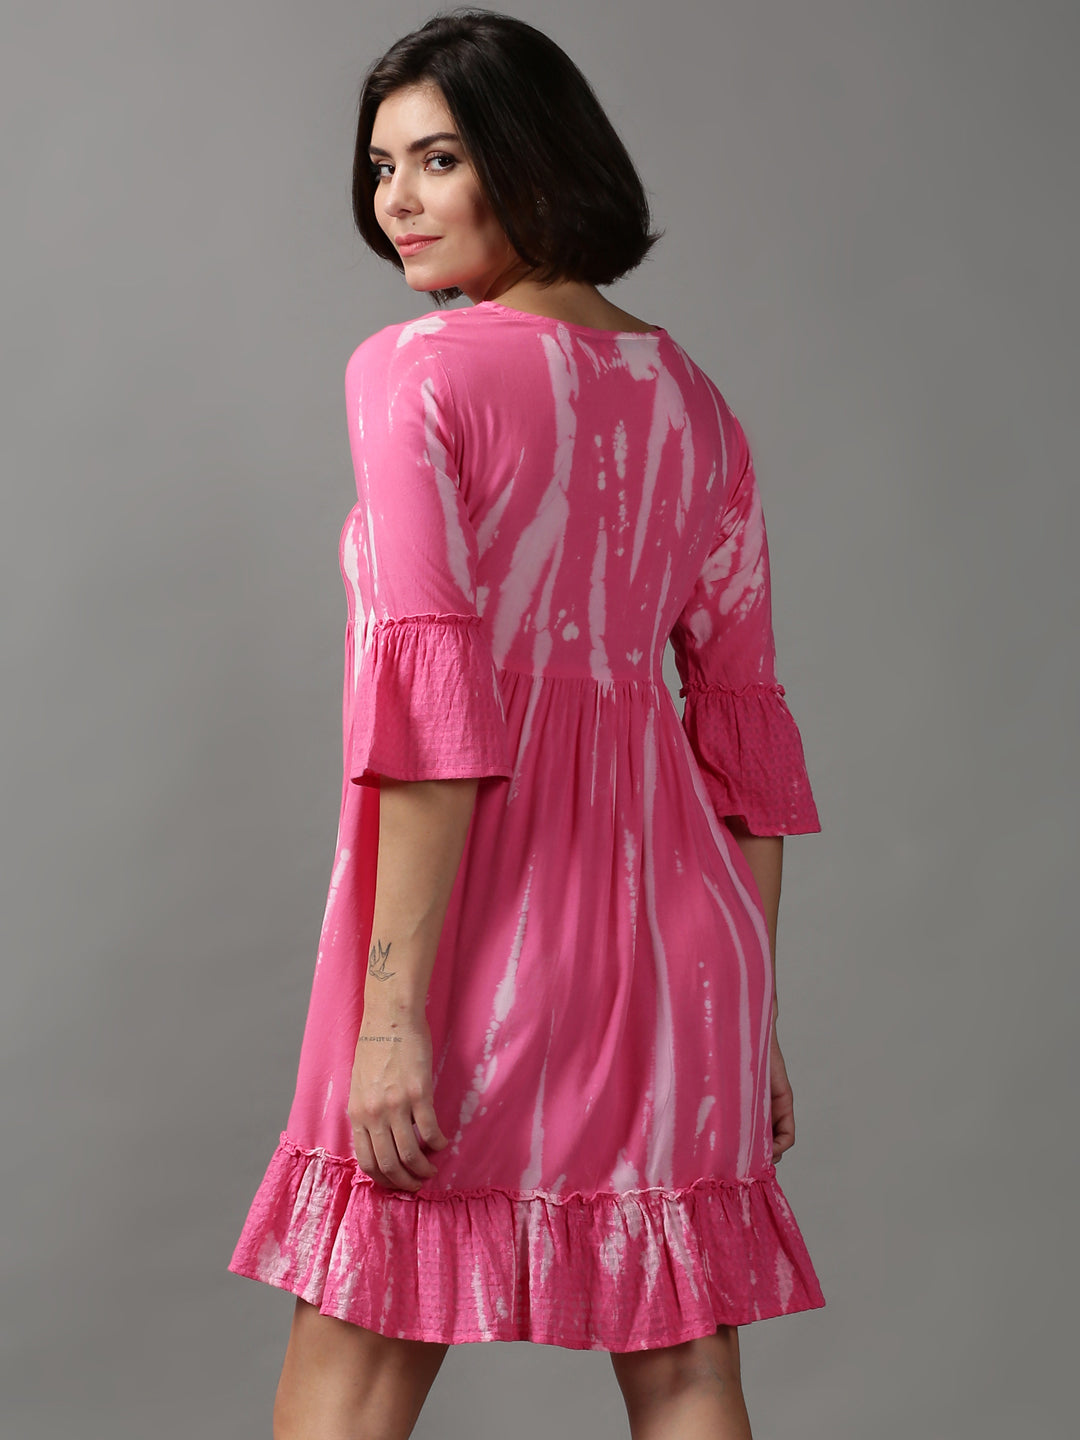 Women's Pink Tie Dye Empire Dress